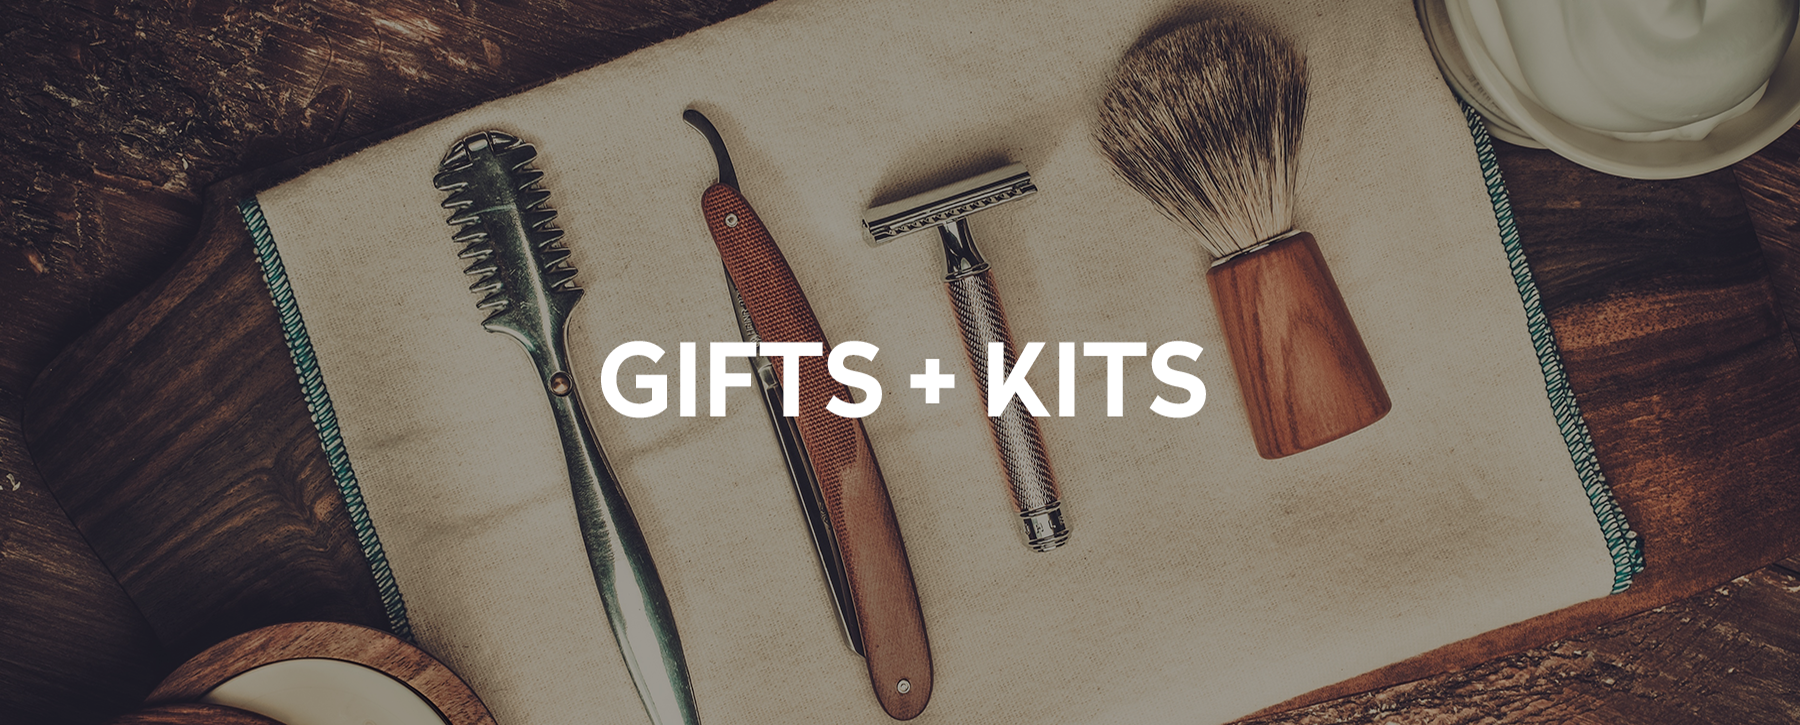 Gifts + Kits